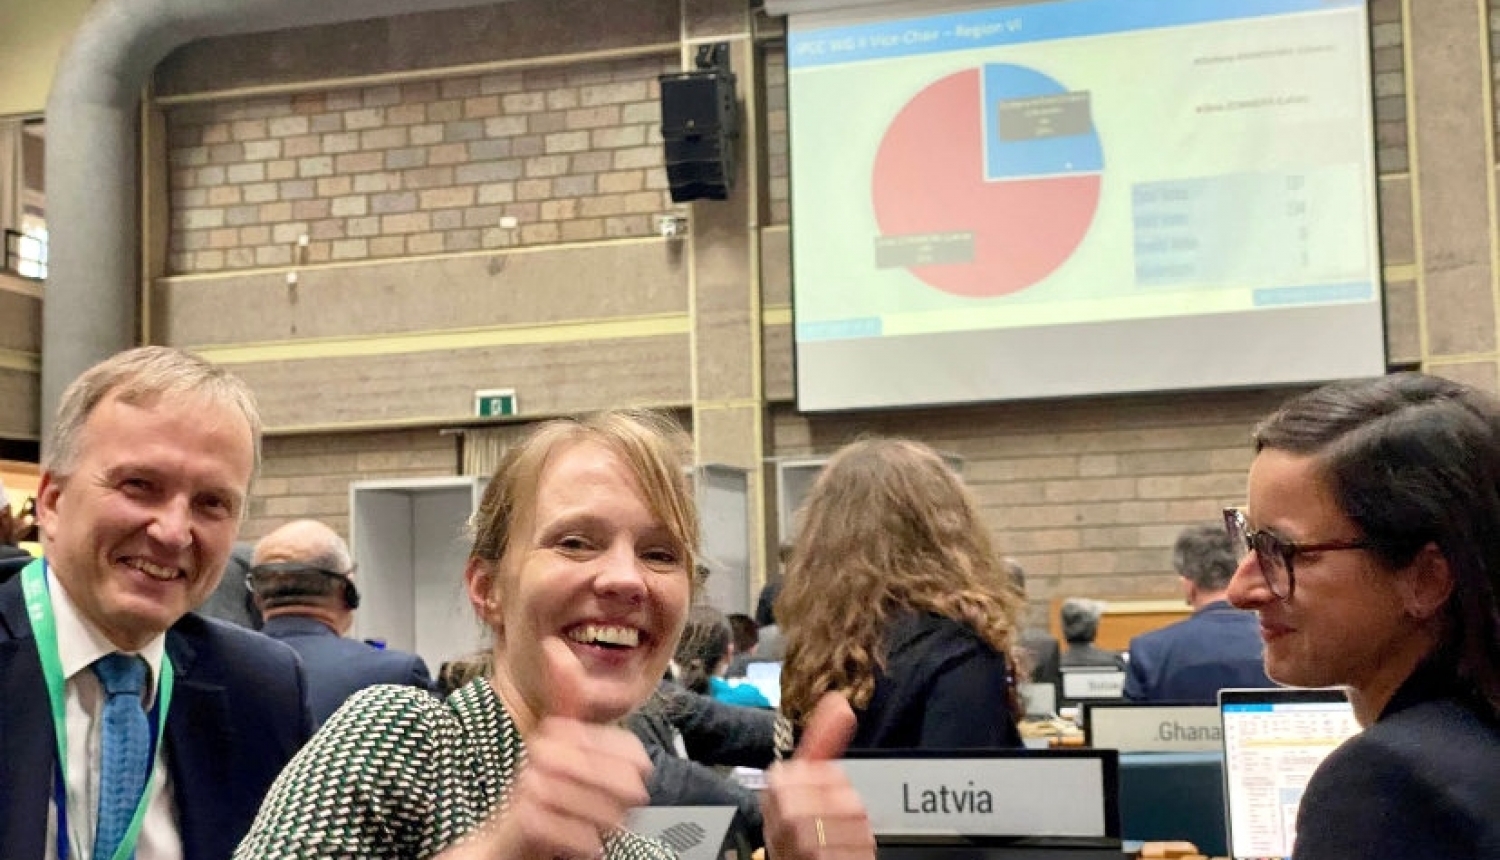 Latvijas pārstāve Zinta Zommers ievēlēta par viceprezidenti Klimata pārmaiņu starpvaldību padomes darba grupā